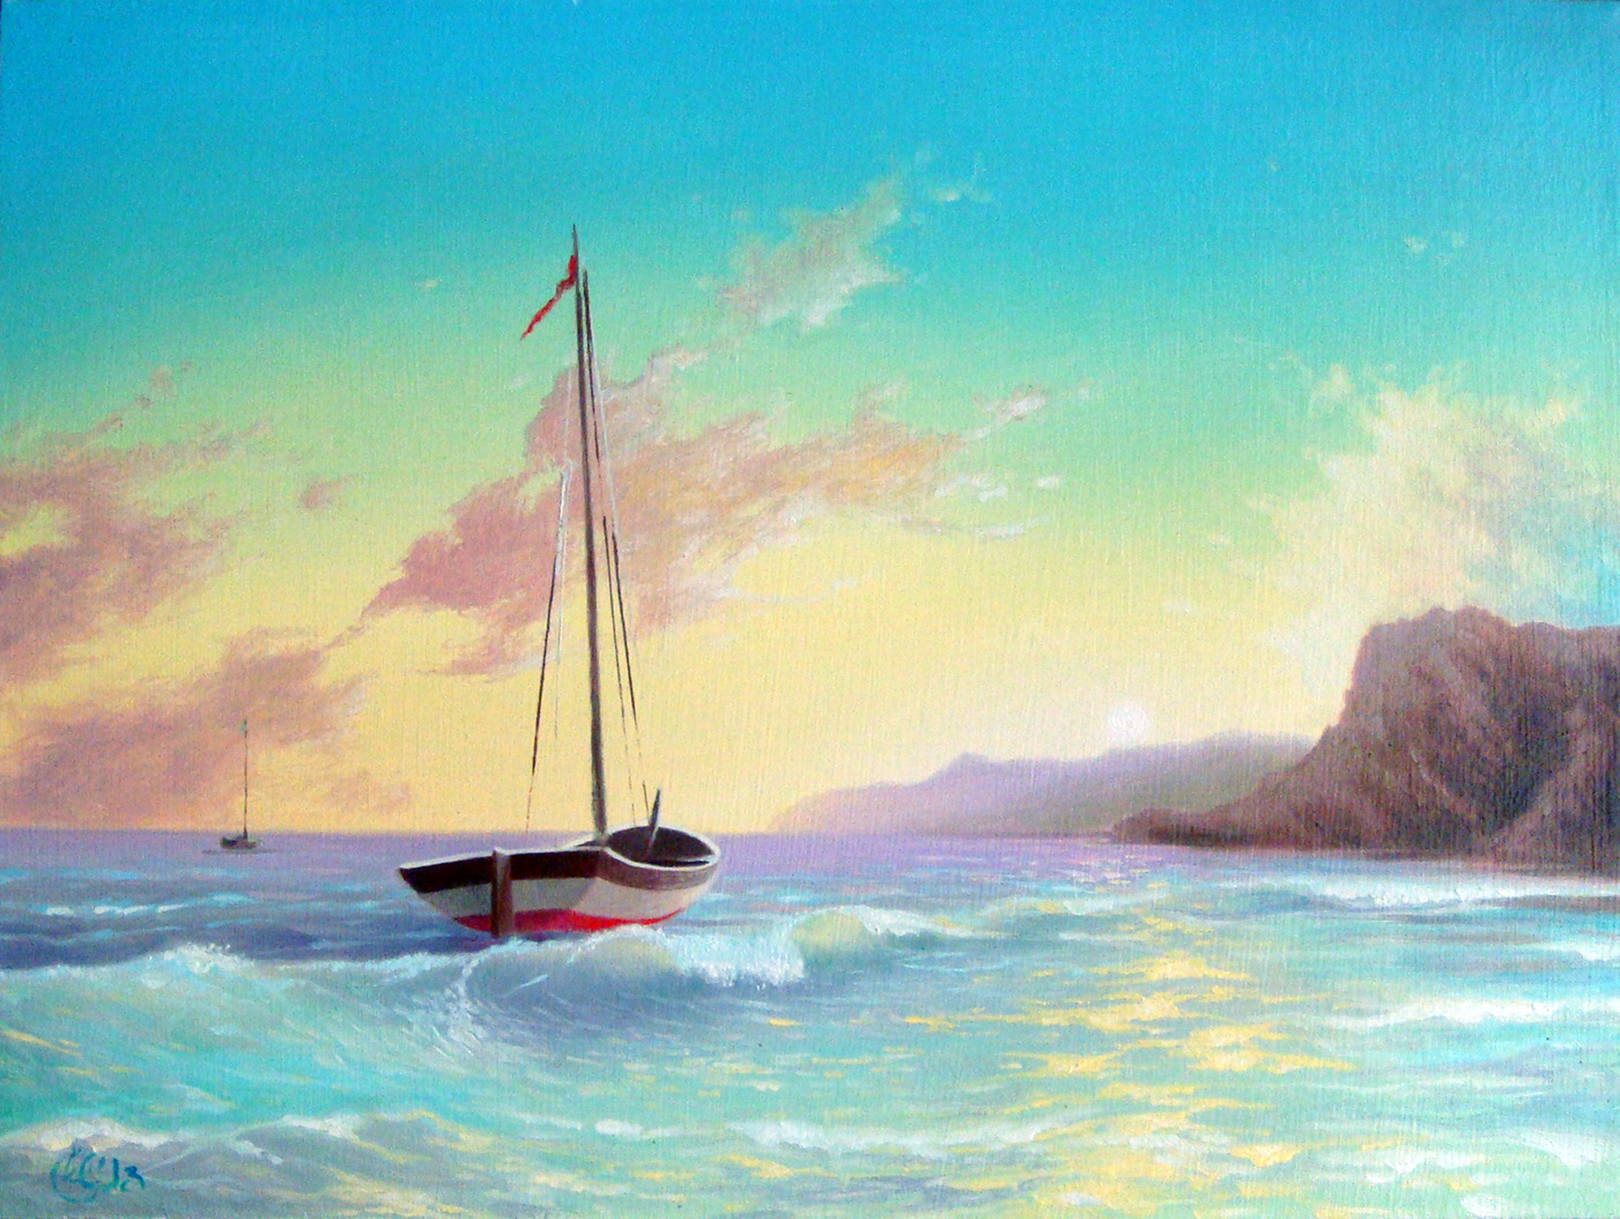 Морской пейзаж с лодкой